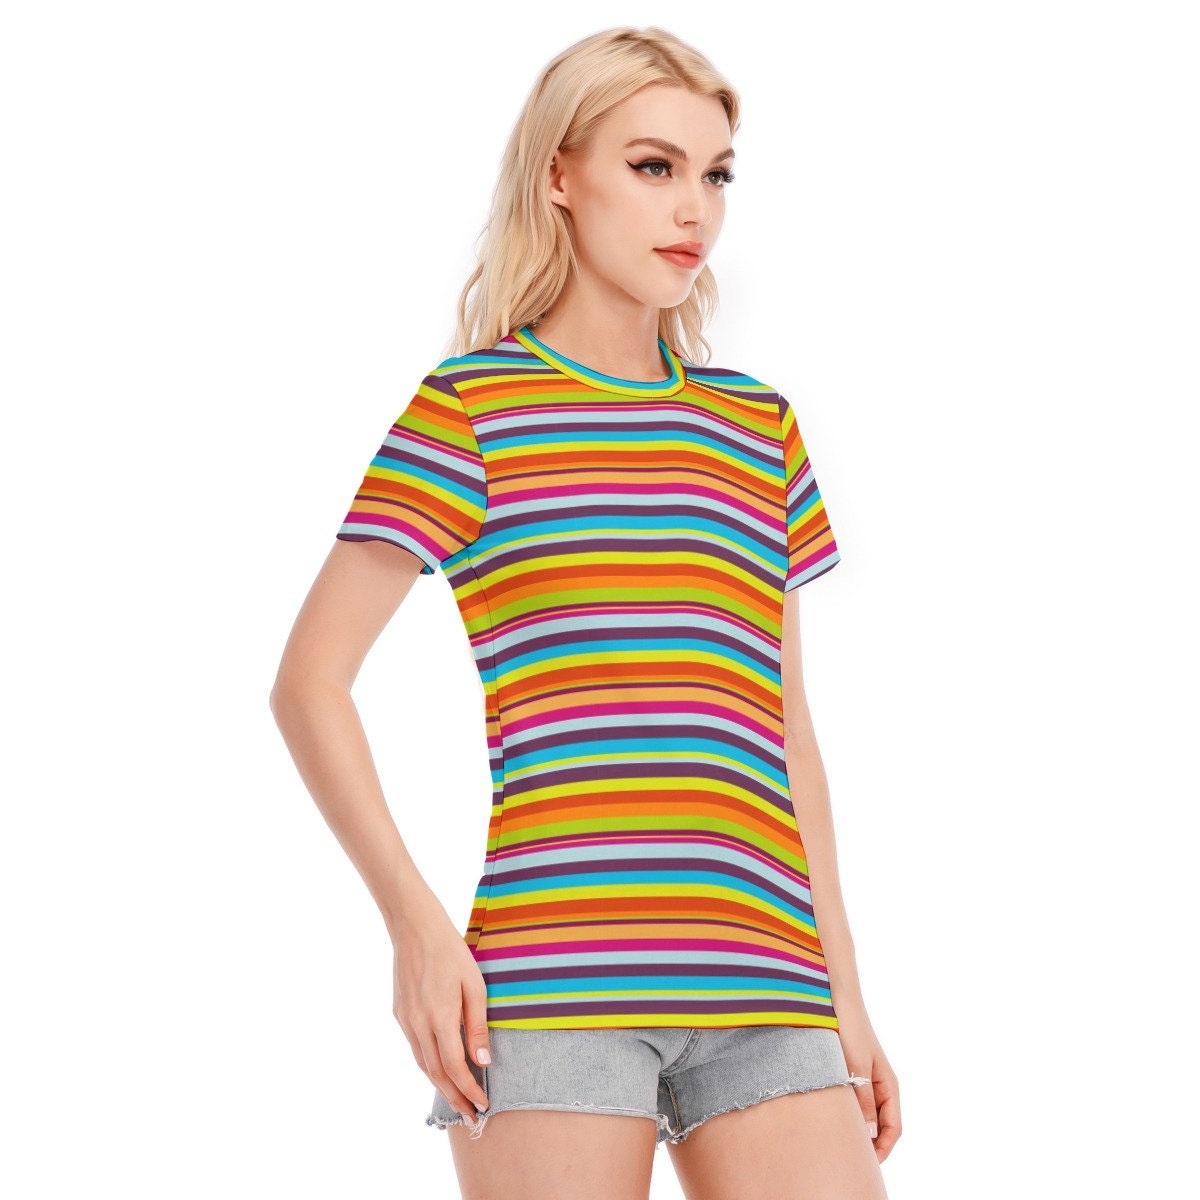 Retro T-Shirt, Stripe T-shirt, 80s retro tshirt, Vintage style Tshirt,Womens Retro T-shirt, Multicolor Stripe T-shirt, 70s 80s style T-shirt